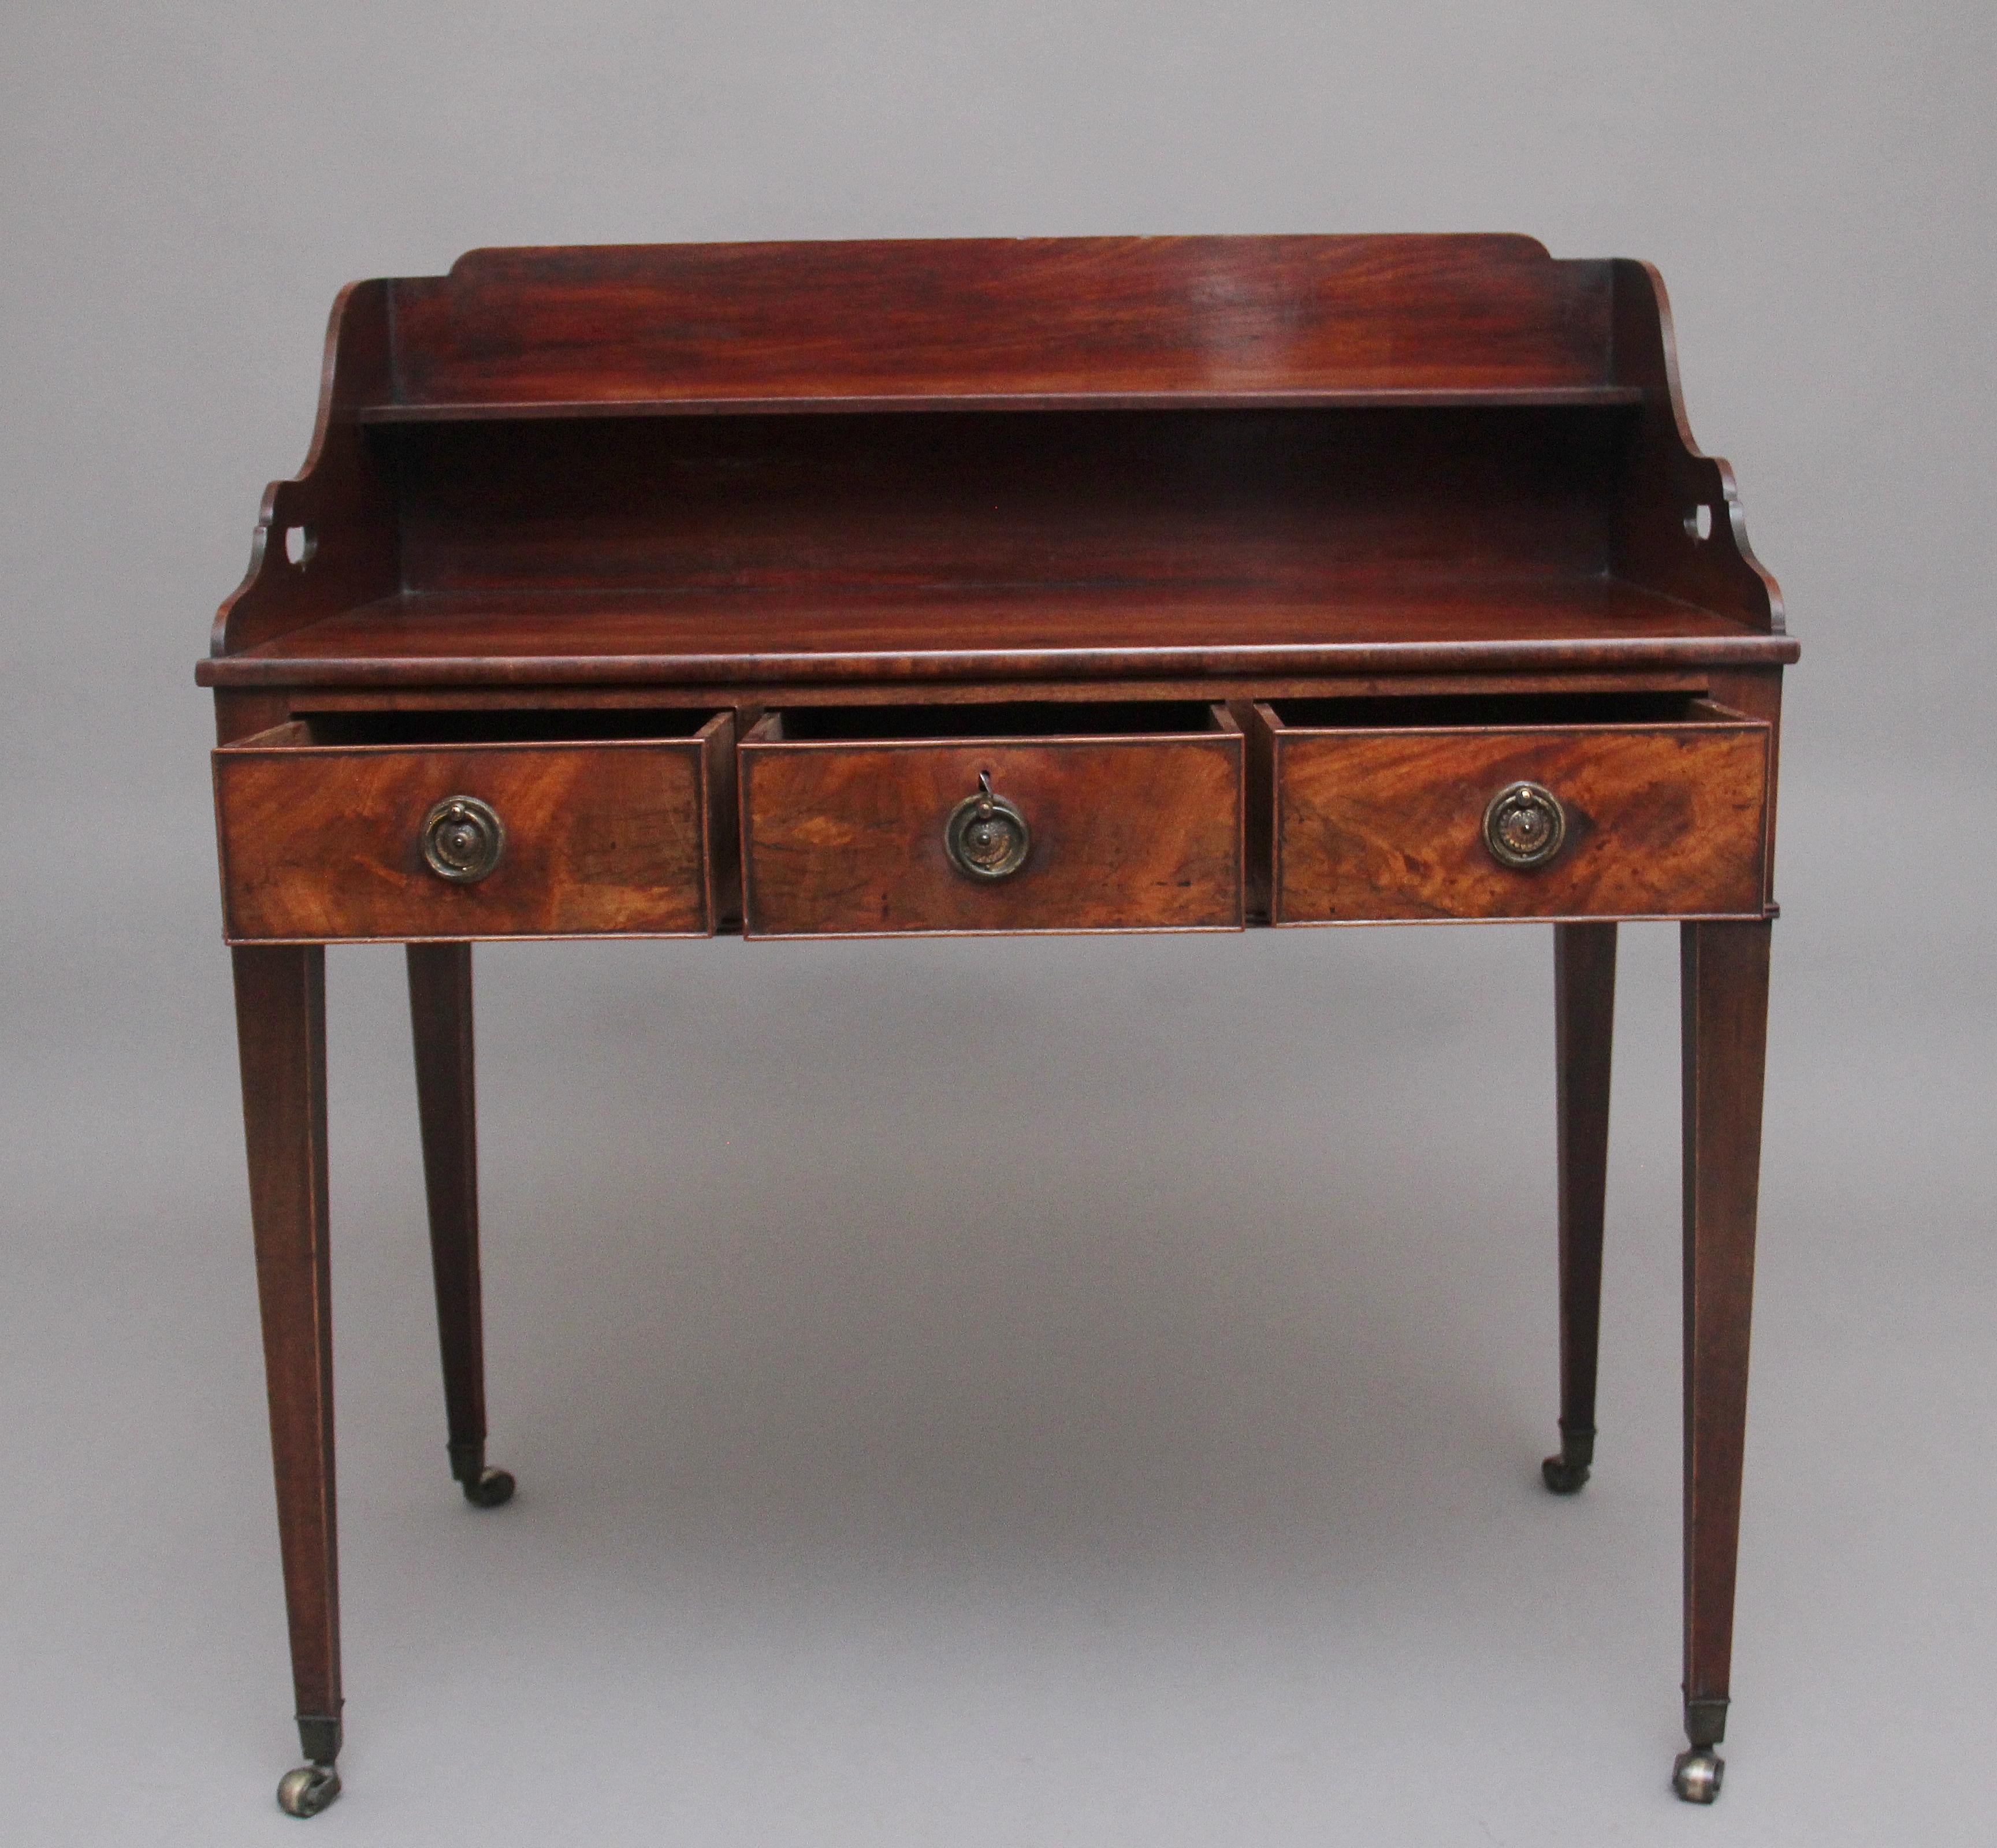 Eine schöne Qualität frühen 19. Jahrhundert Mahagoni-Schreibtisch, mit einer geformten Galerie mit einem Regal, Fret ausgeschnitten Tragegriffe an den Seiten der Galerie, drei Fries Schubladen mit den ursprünglichen Messingring Griffe, schöne